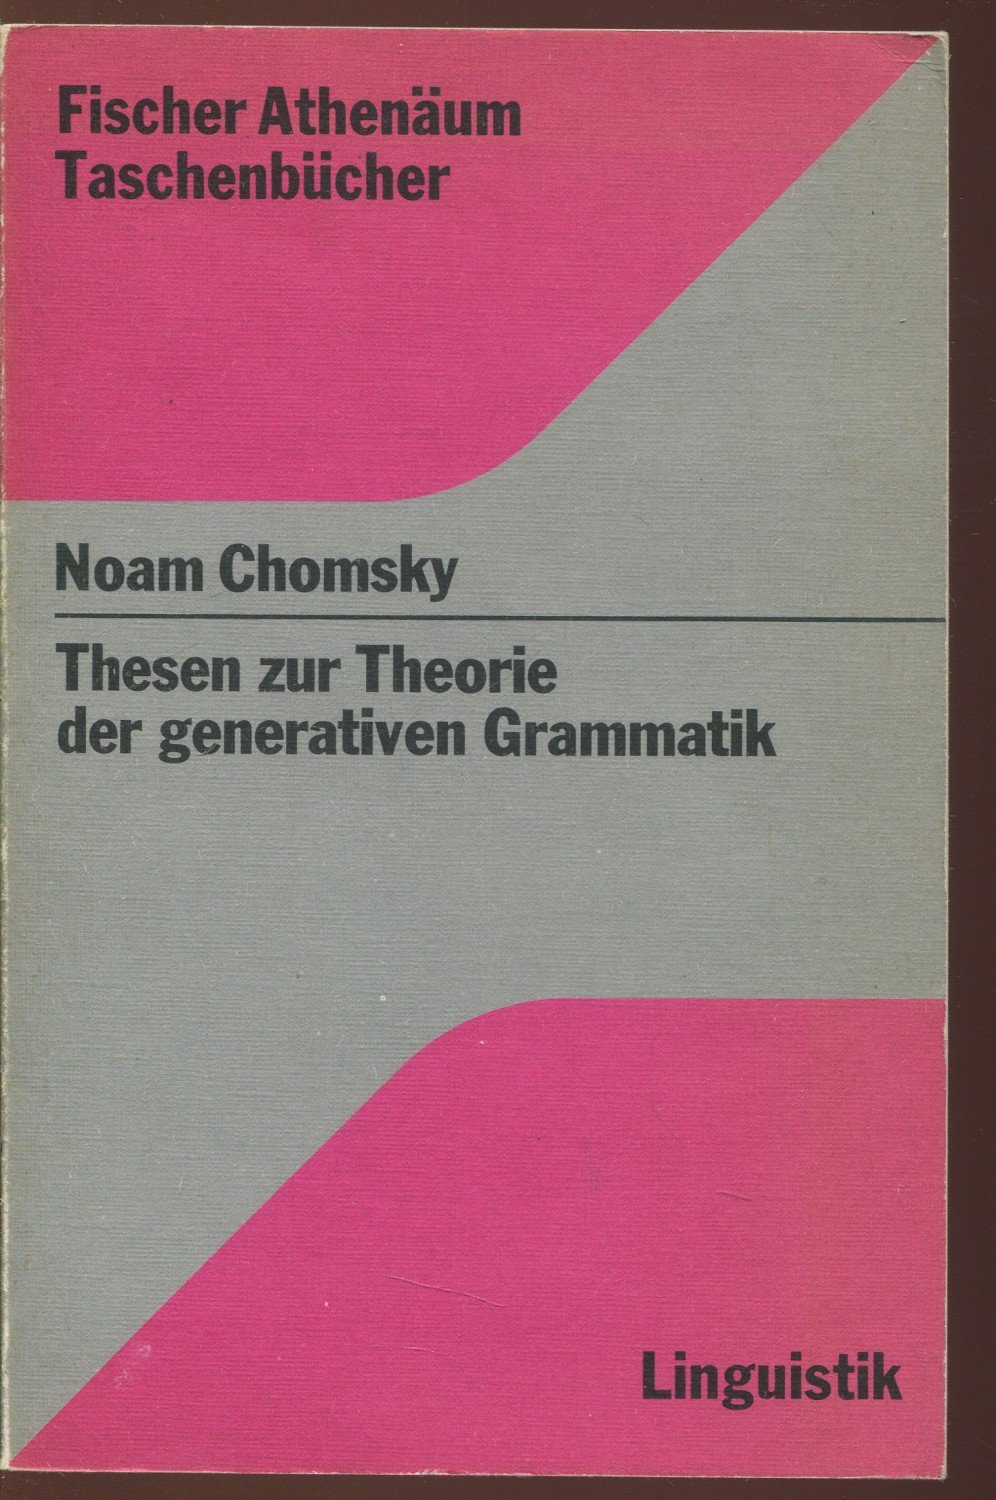 Highland lægemidlet sjældenhed Thesen zur Theorie der generativen Grammatik“ (Noam Chomsky) – Buch  gebraucht kaufen – A02aVlze01ZZg